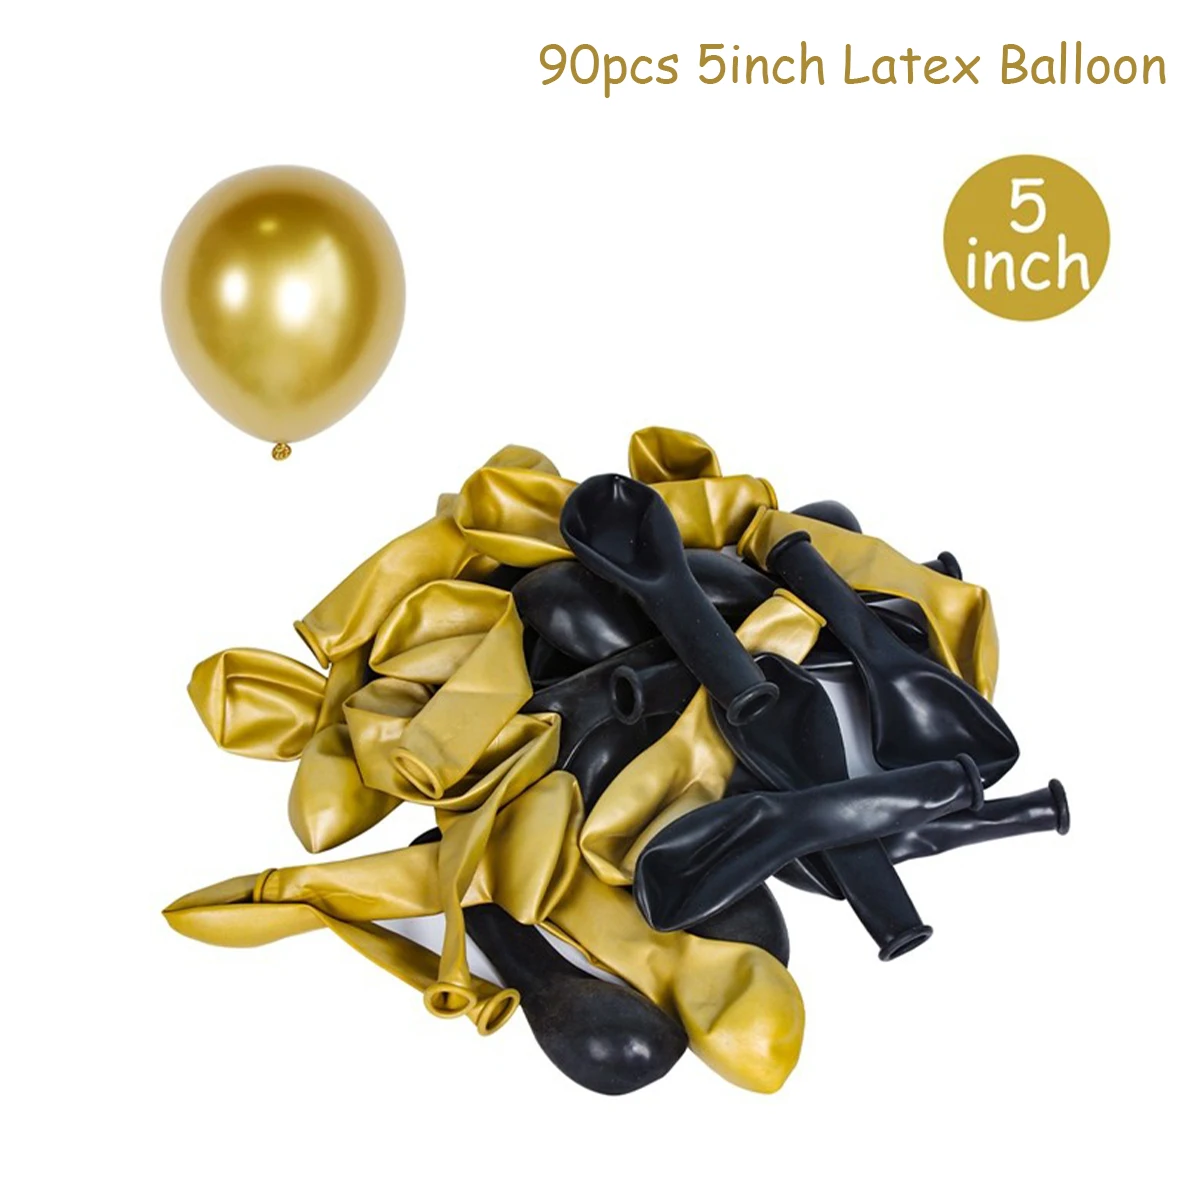 90 pçs 5 polegada macaron látex balão decoração da festa de aniversário do casamento crianças 1st aniversário ballon hélio globos chá de fraldas baloon